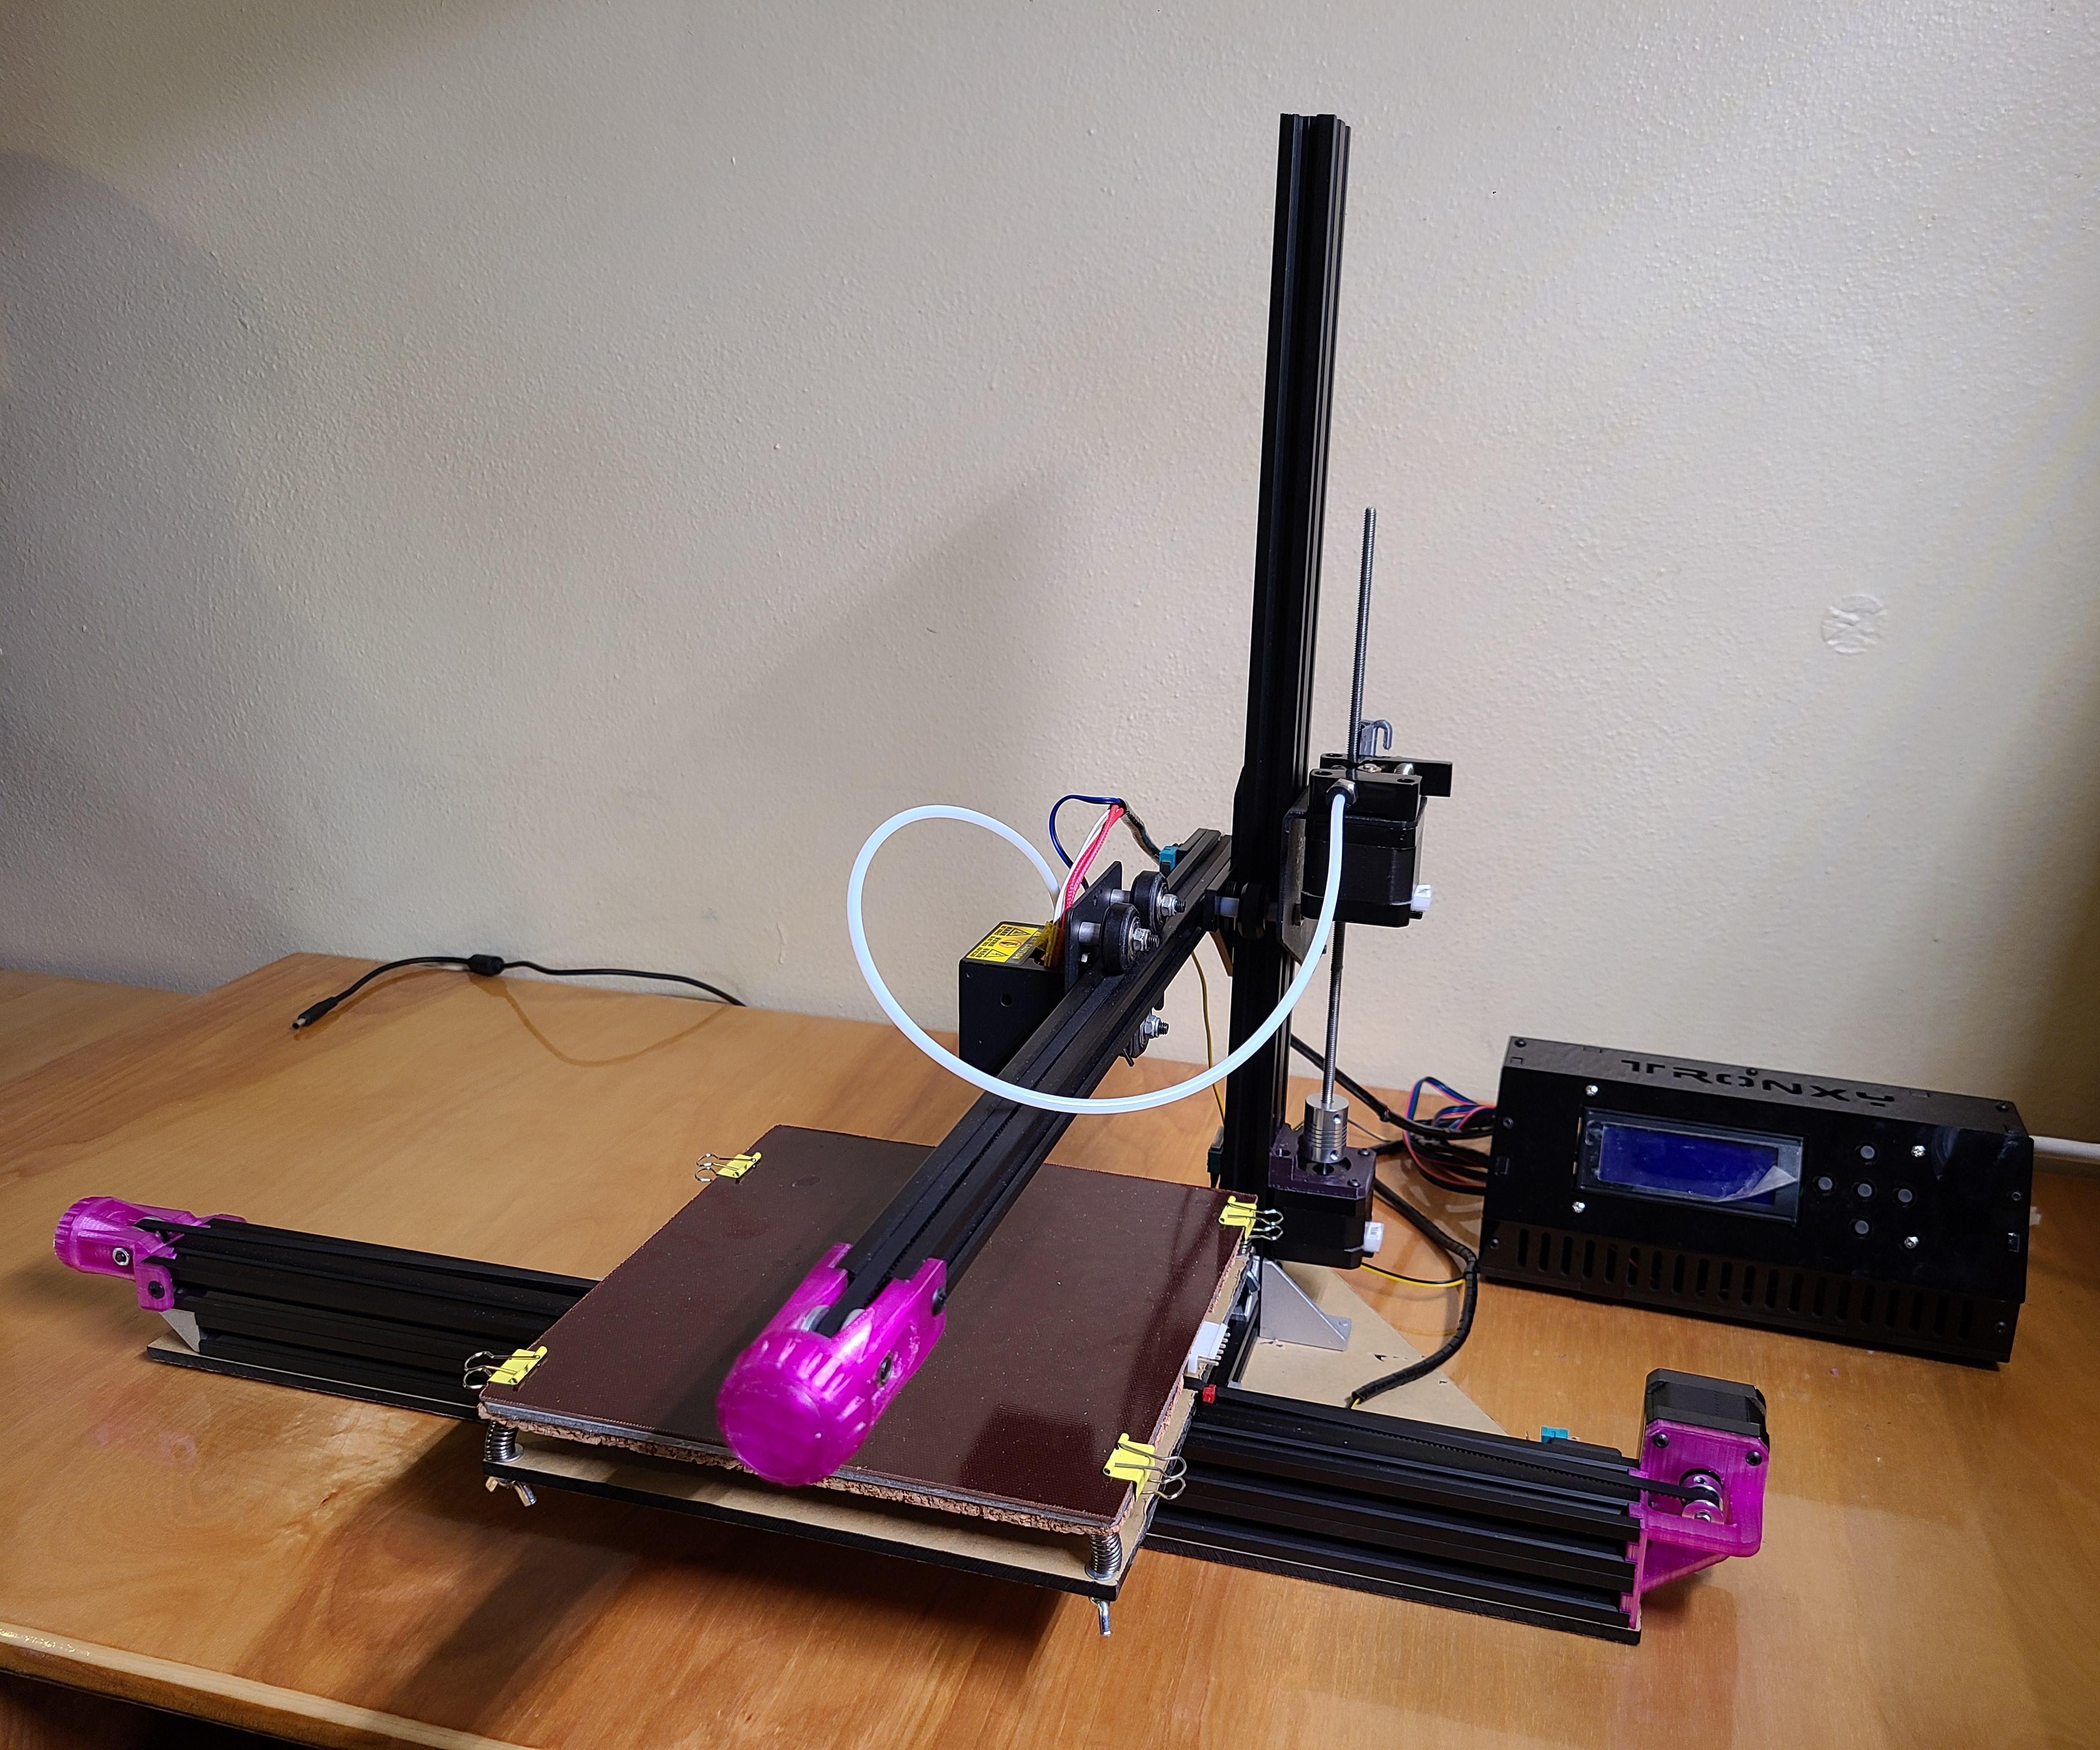 Embiggening the TronXY X1 3D Printer!